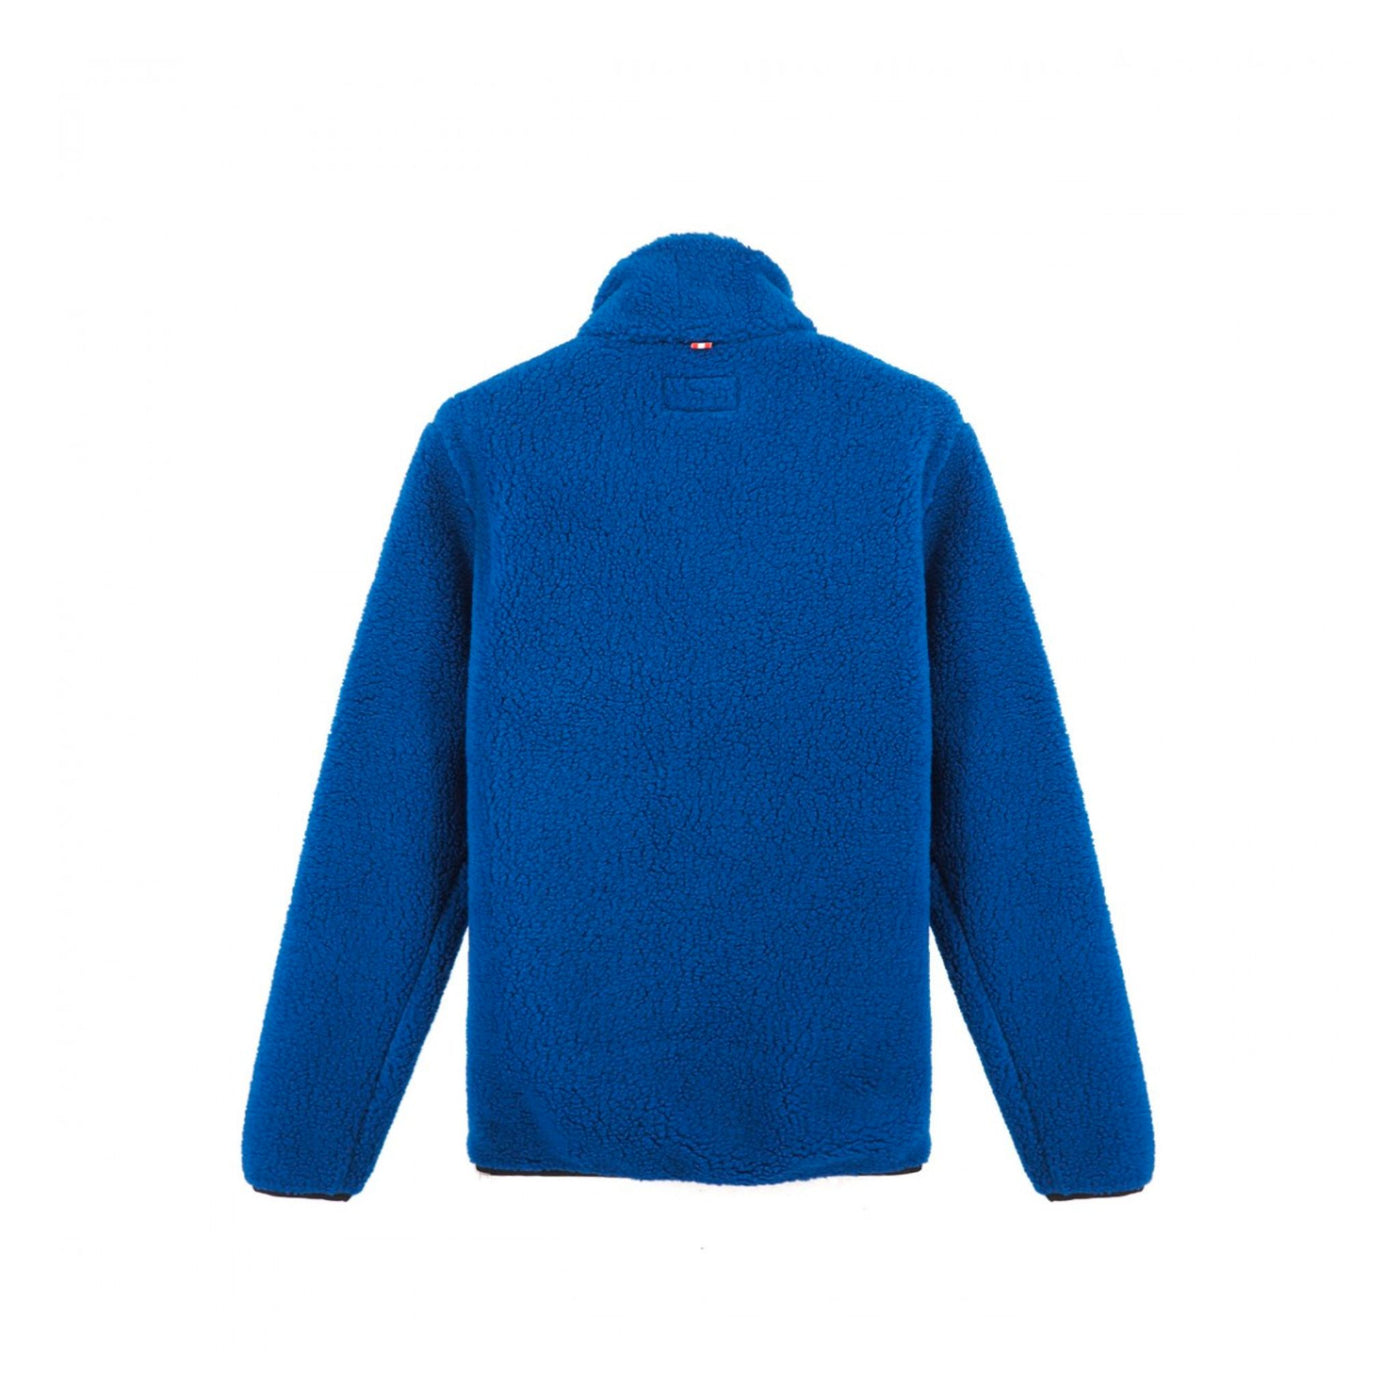 Men's half zip fleece sweater